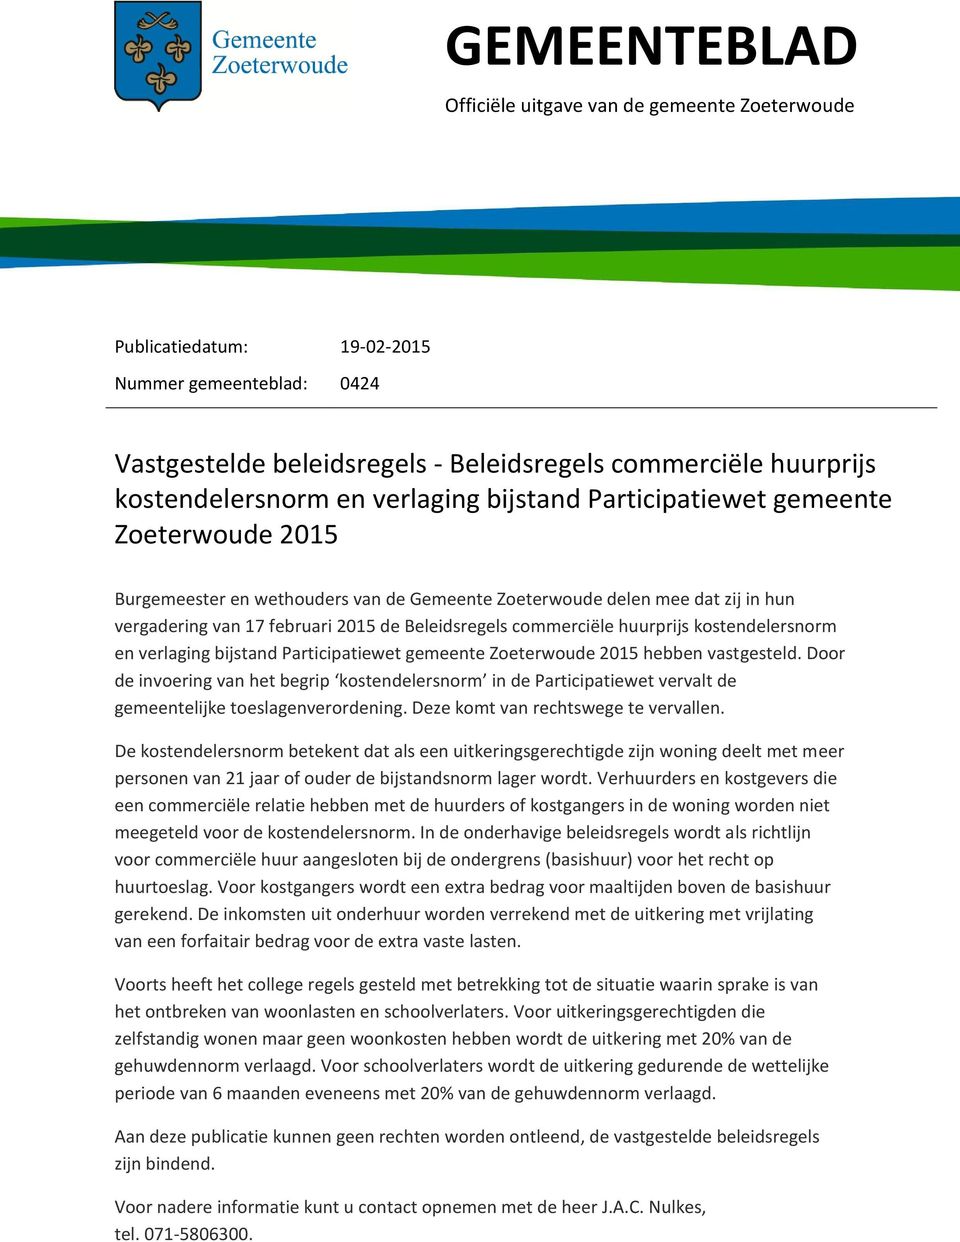 commerciële huurprijs kostendelersnorm en verlaging bijstand Participatiewet gemeente Zoeterwoude 2015 hebben vastgesteld.